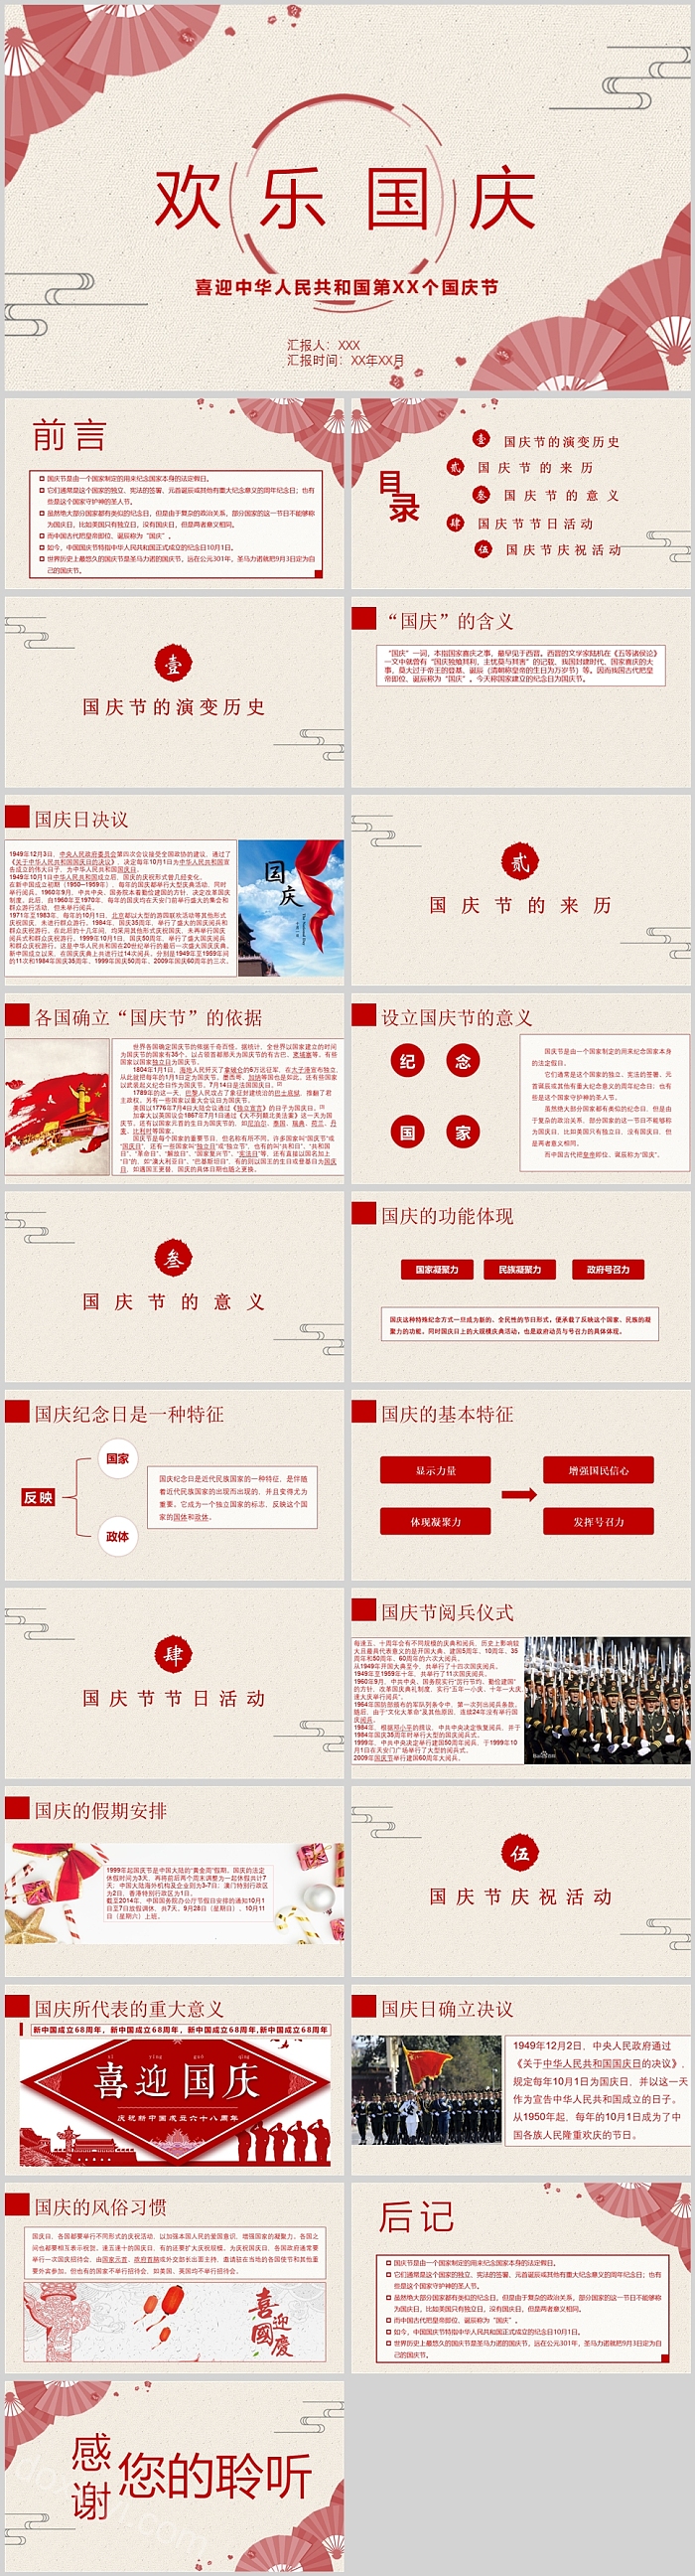 简约喜迎中华人民共和国国庆节PPT模板